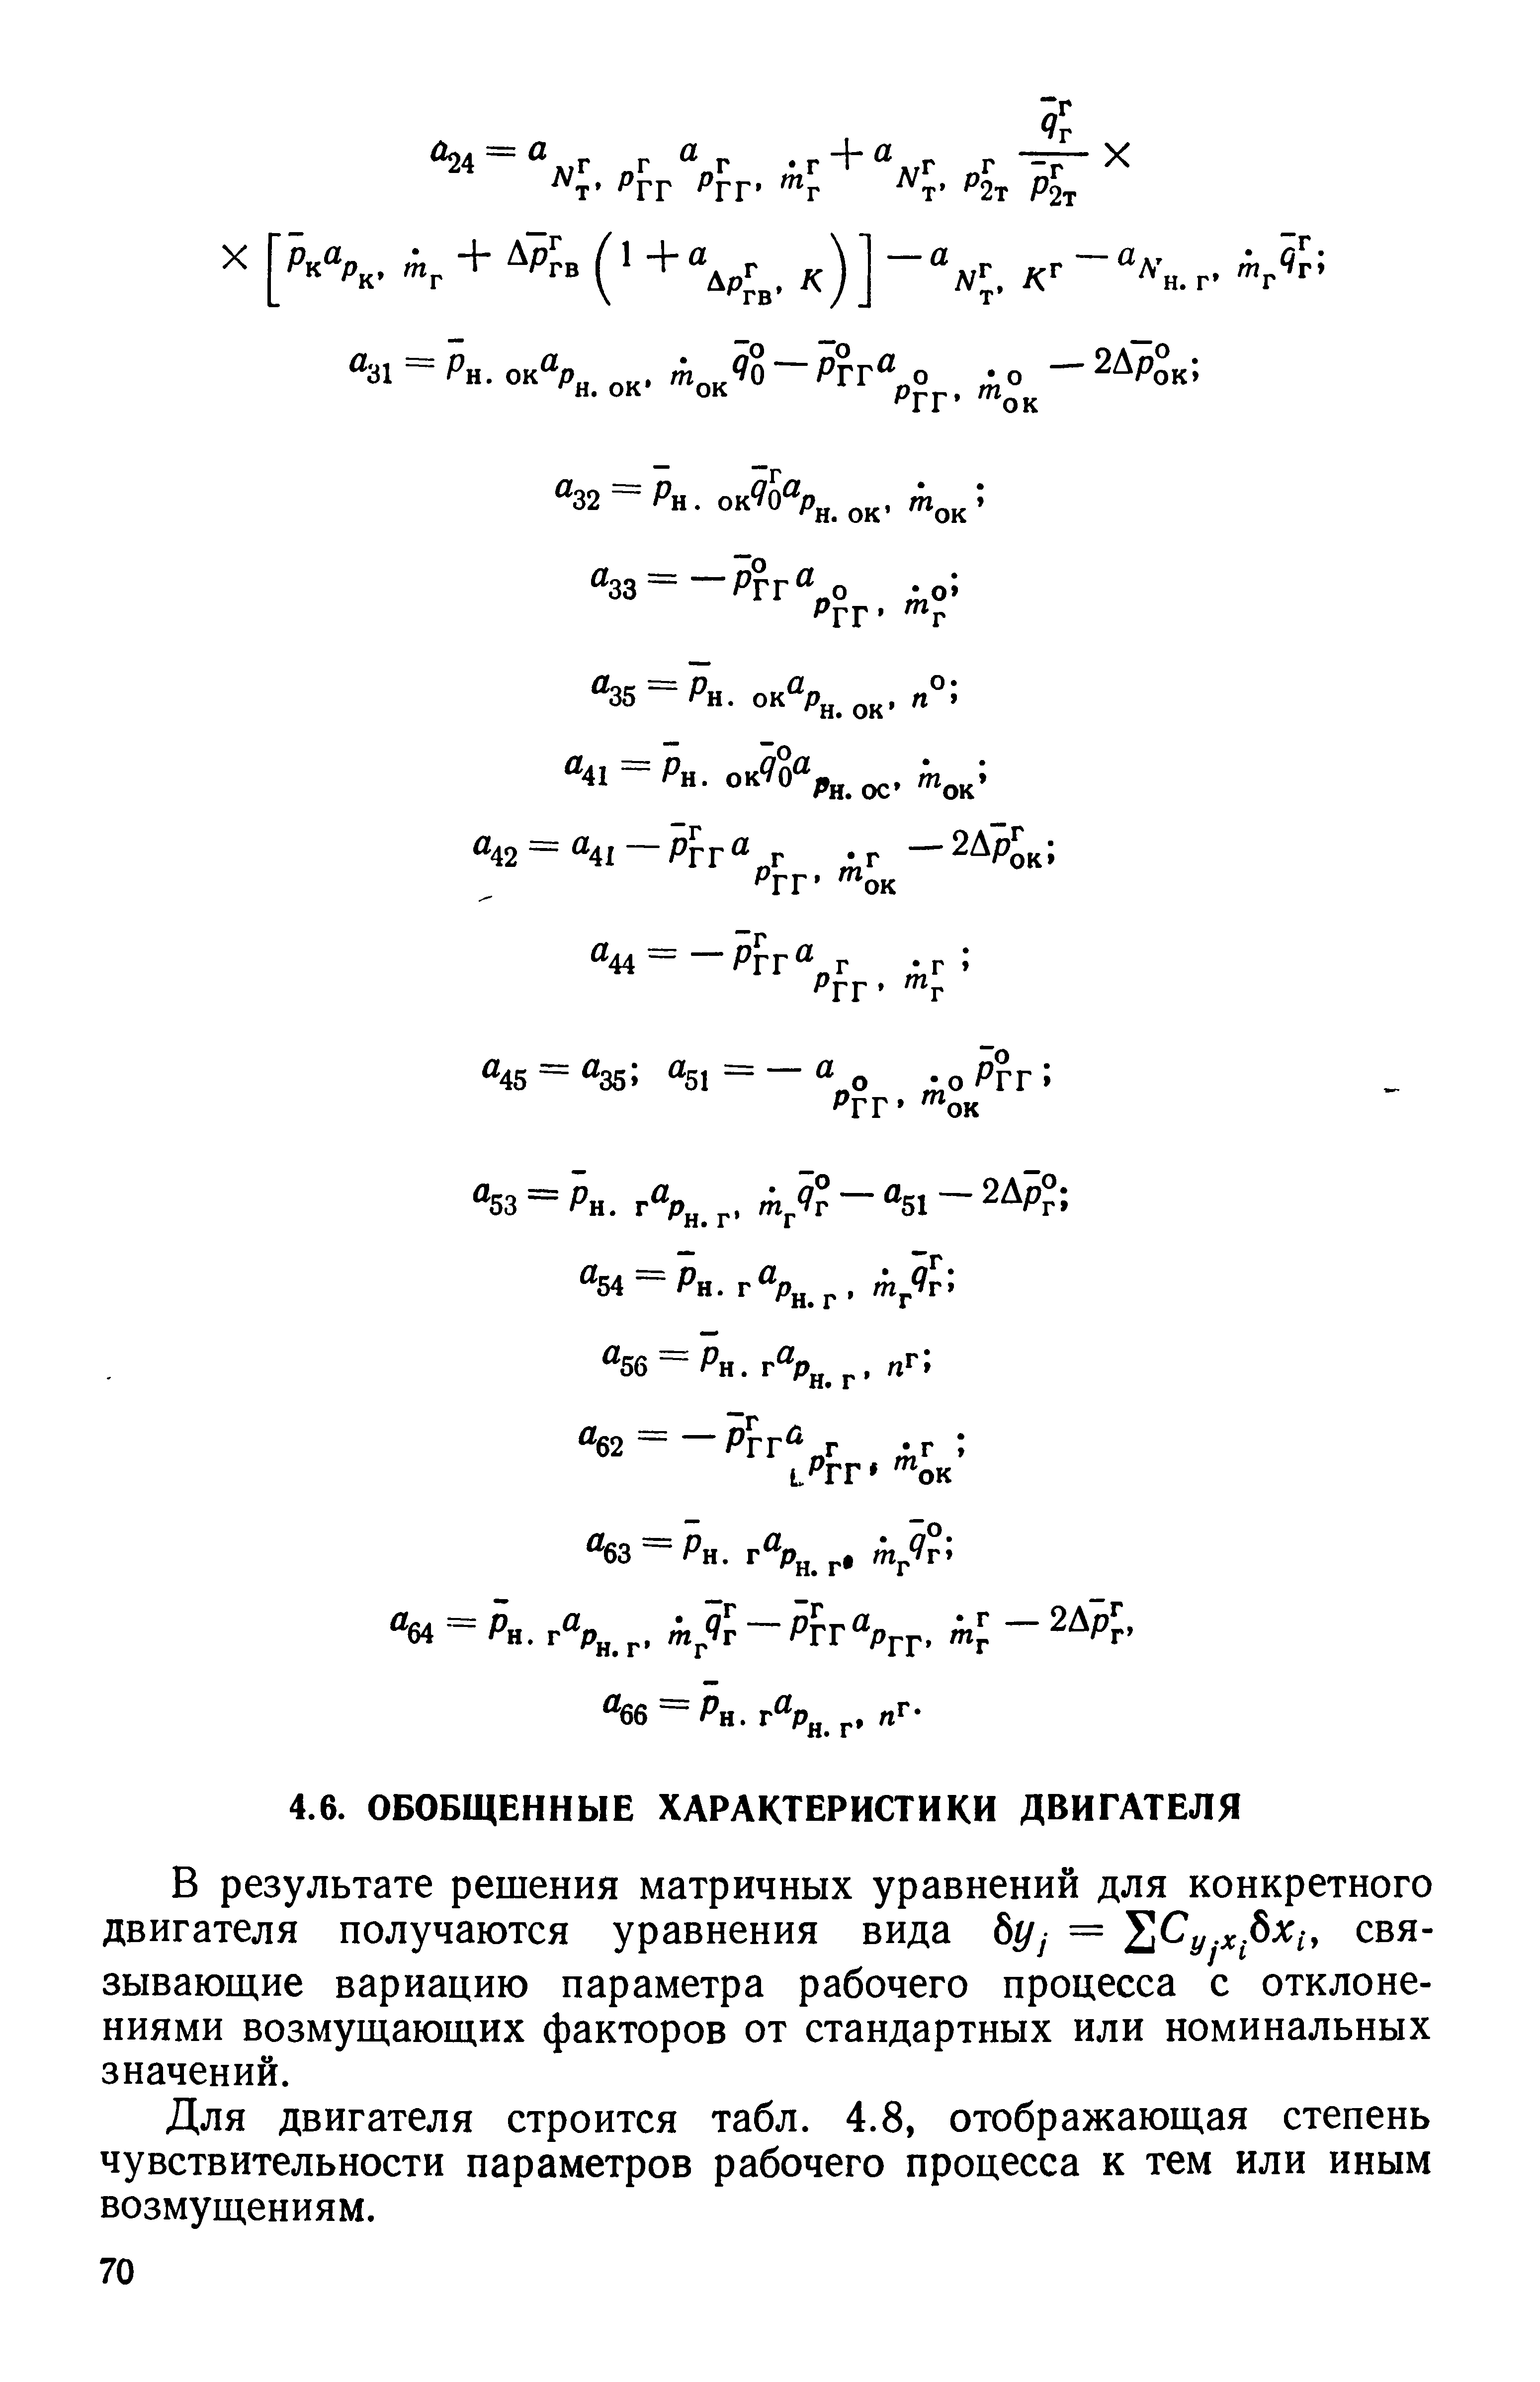 В результате решения матричных уравнений для конкретного двигателя получаются уравнения вида б(/у = Су.х бх1, связывающие вариацию параметра рабочего процесса с отклонениями возмущающих факторов от стандартных или номинальных значений.
